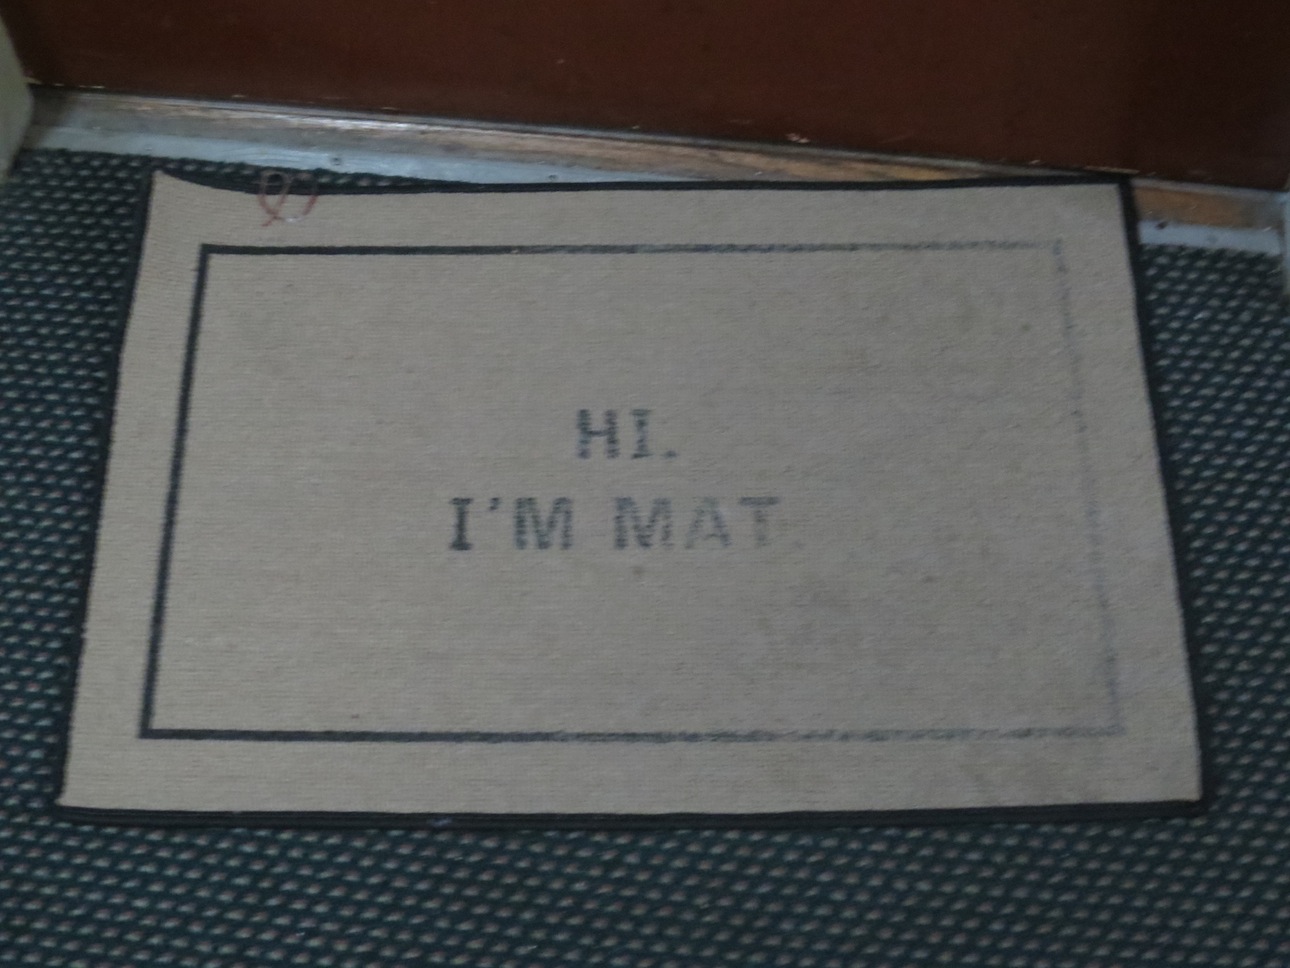 Hi, I'm Mat doormat.